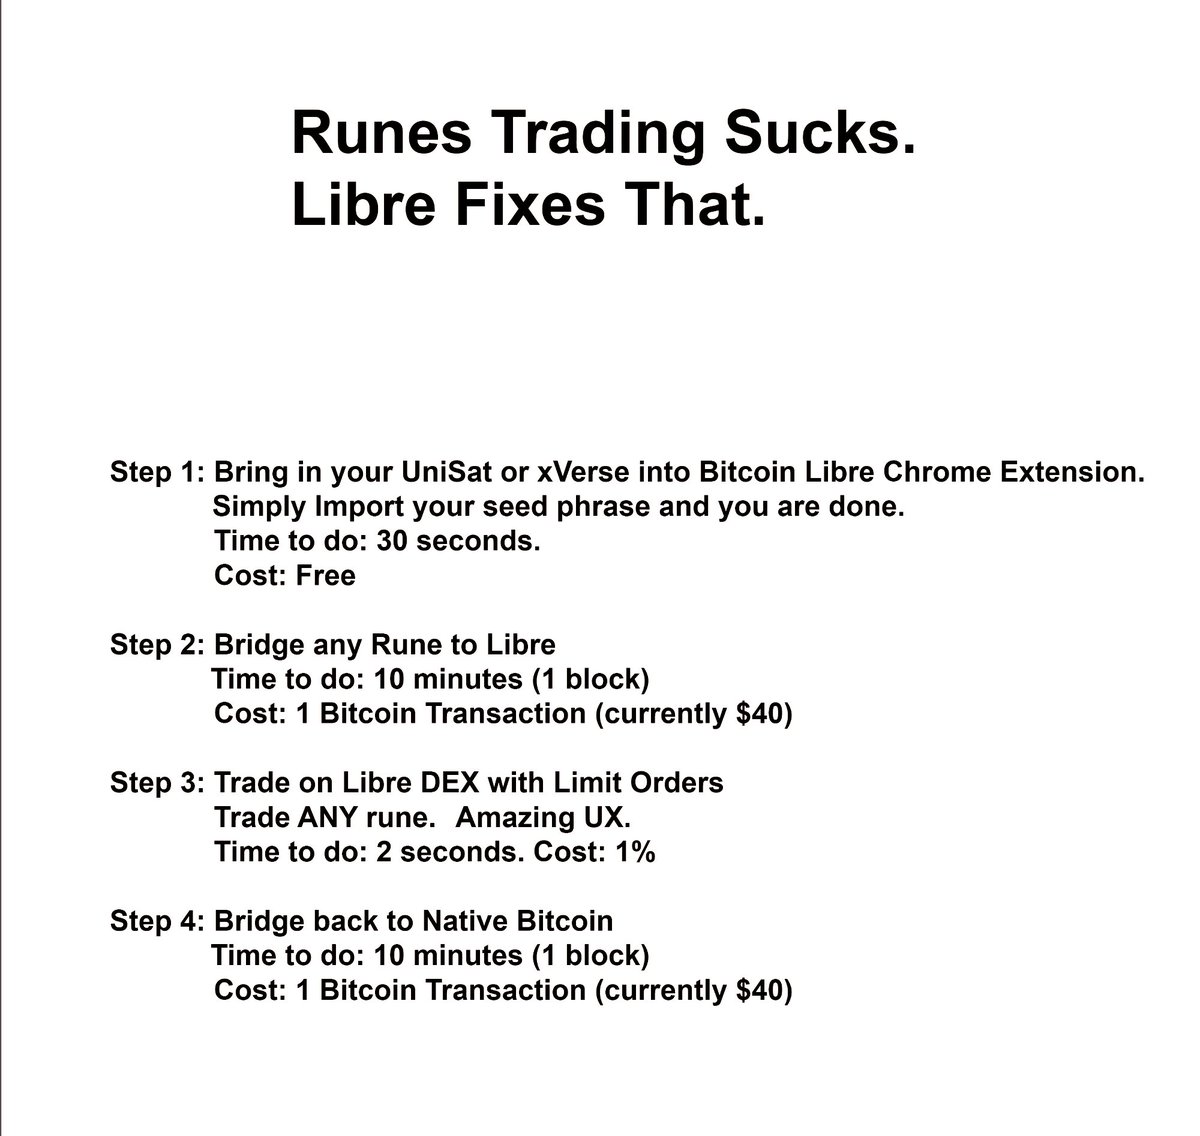 Runes trading sucks. Libre fixes that.